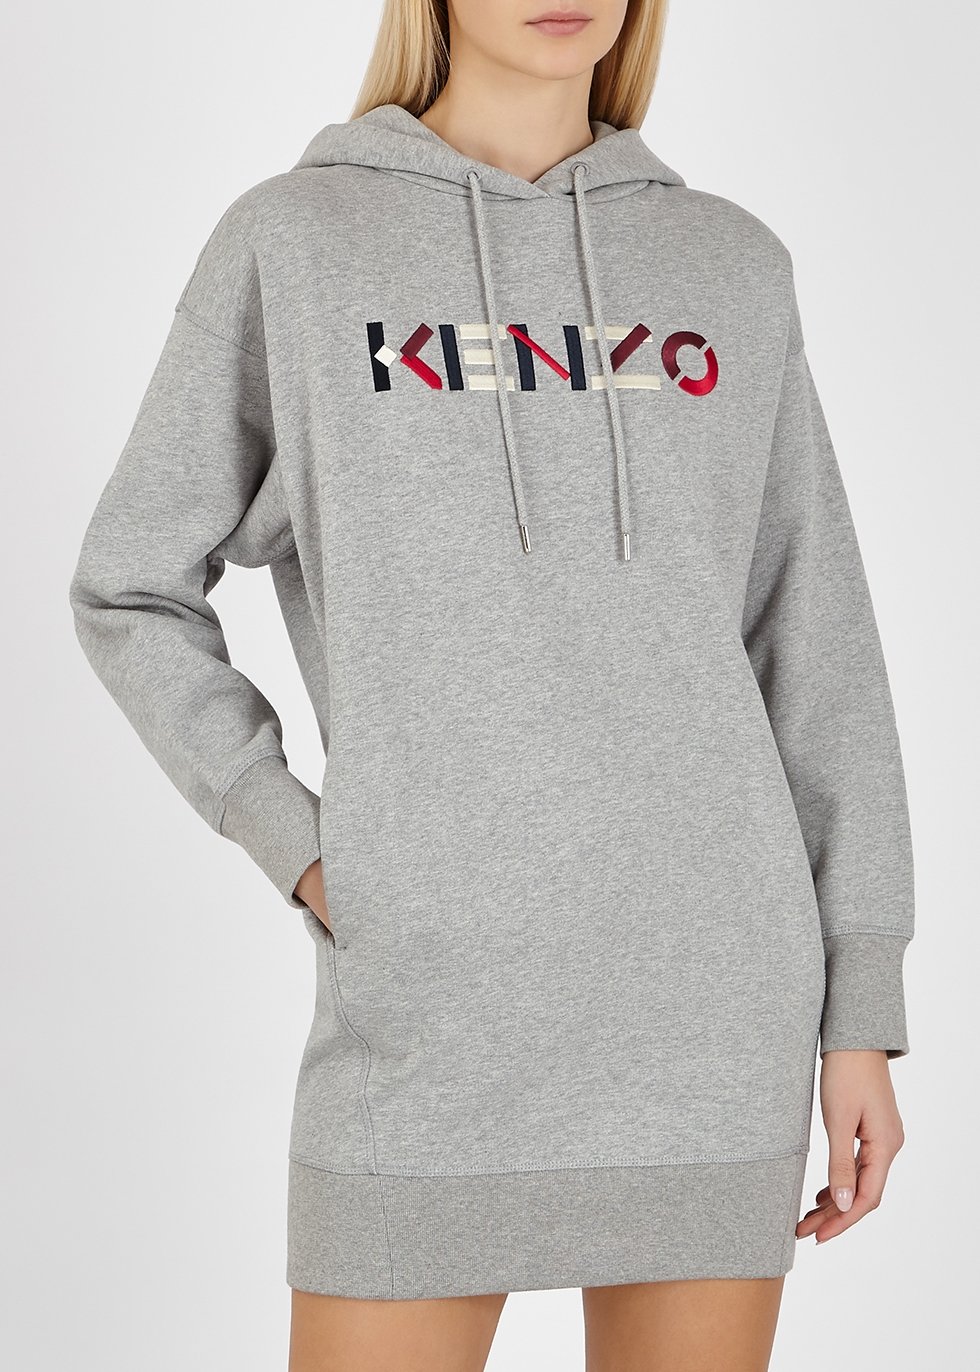 kenzo hoodie dress